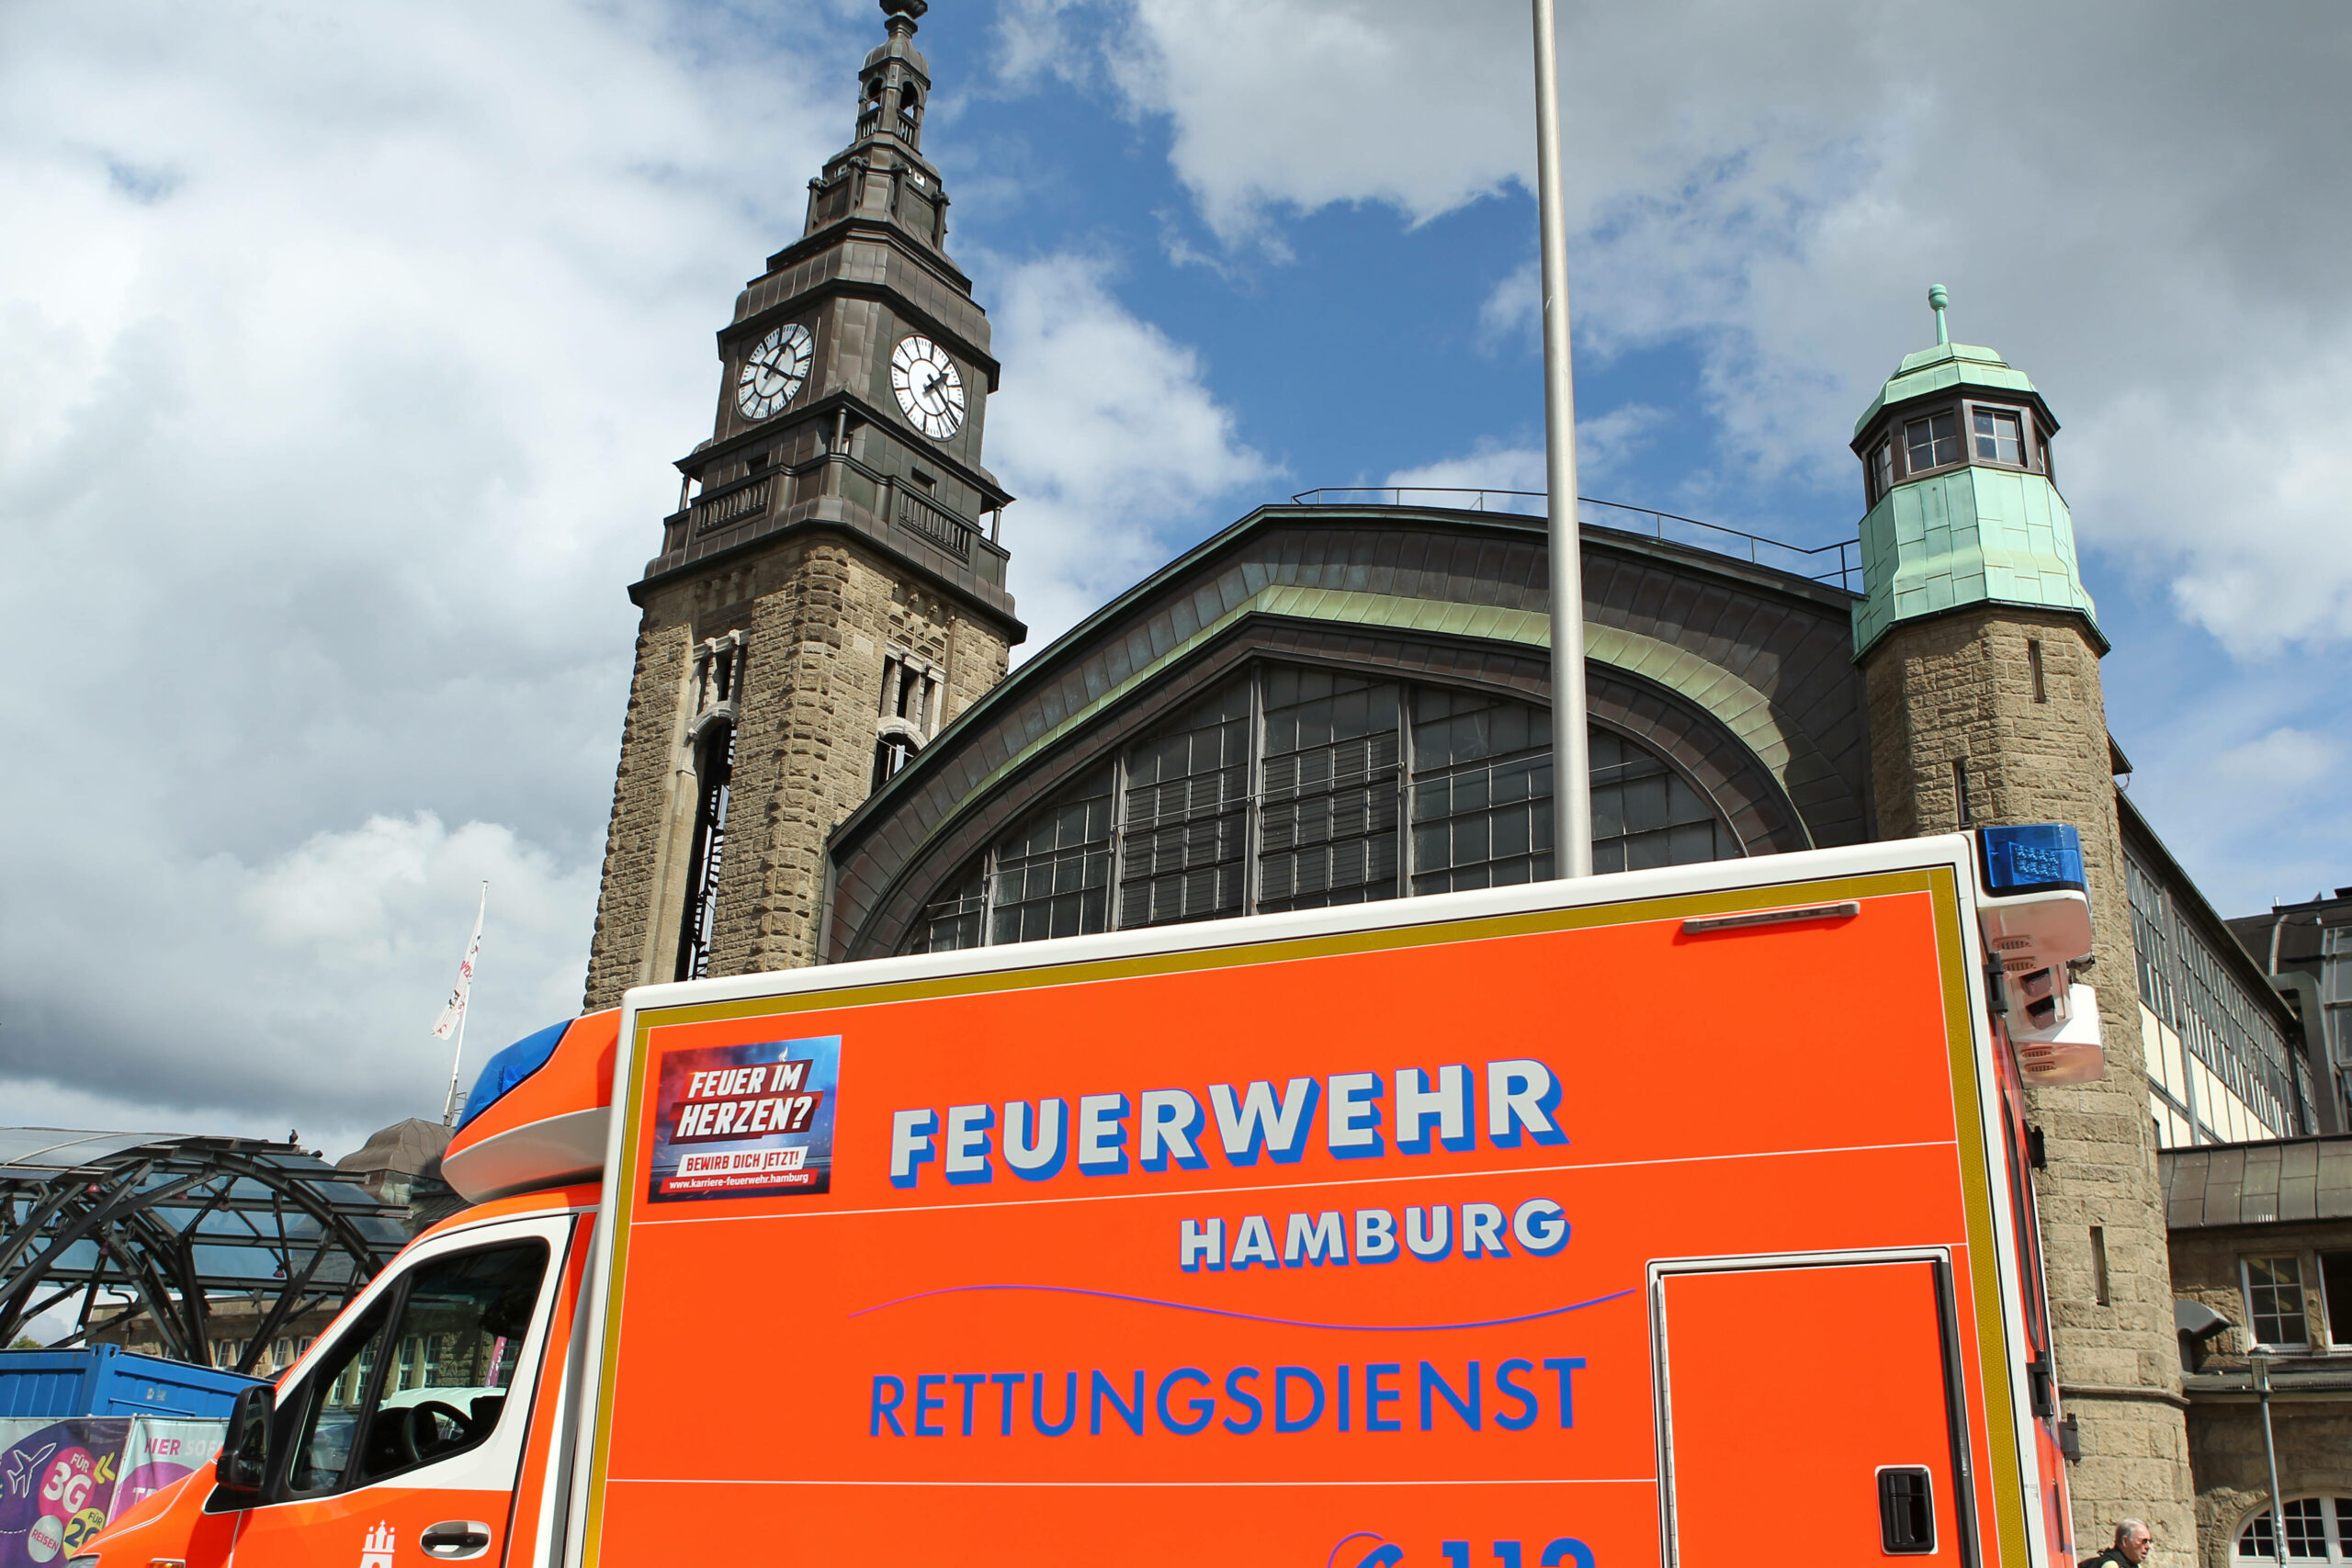 Ein Rettungswagen der Feuerwehr Hamburg steht vor der Wandelhalle am Hauptbahnhof Hamburg. St. Georg